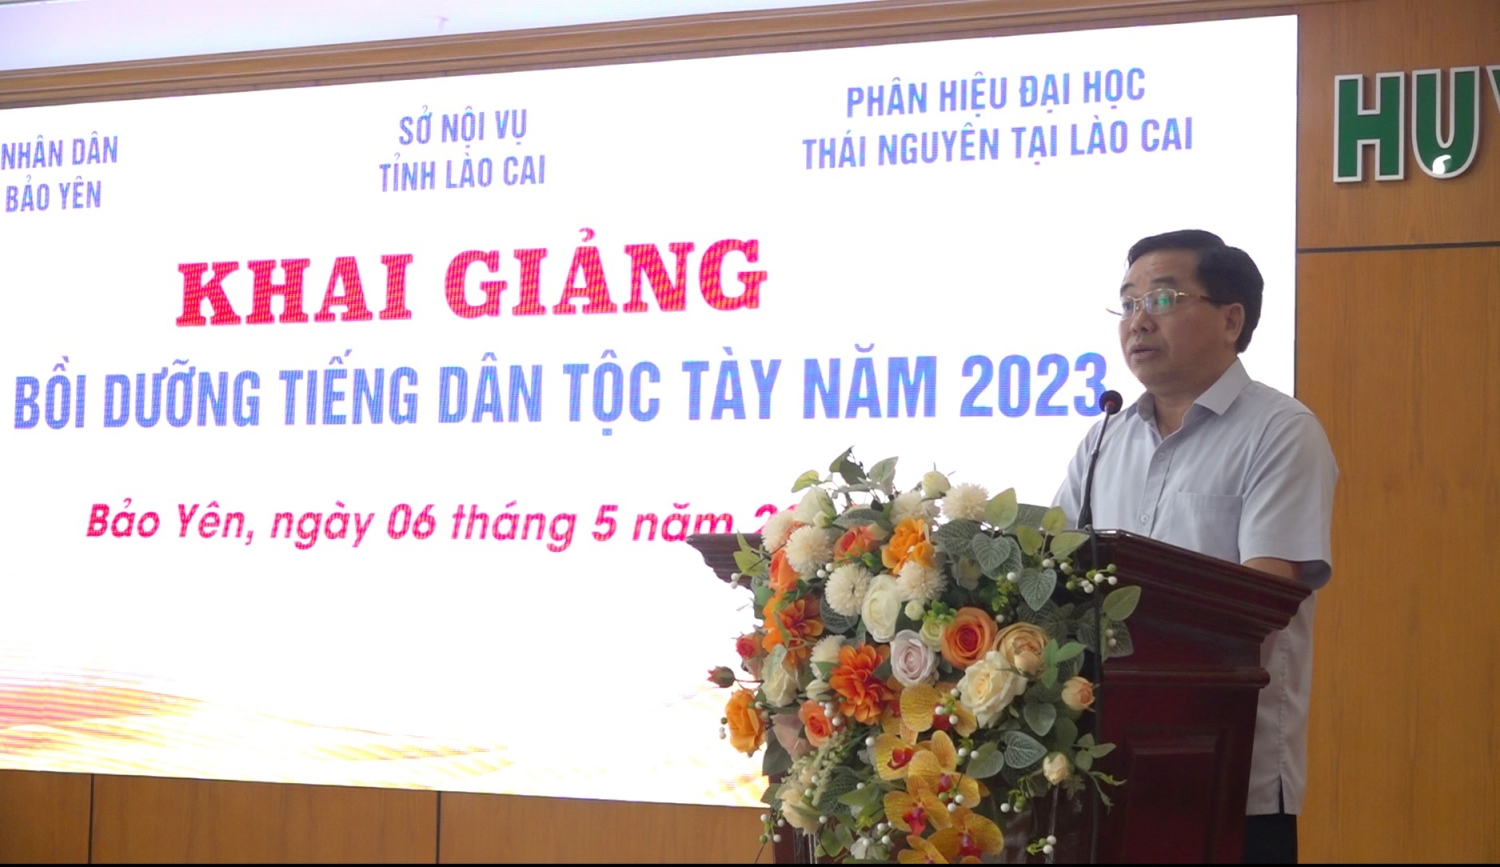 Đồng chí Ngô Hữu Tuyên, Phó Giám đốc Sở nội vụ tỉnh phát biểu tại buổi khai giảng lớp bồi dưỡng tiếng dân tộc Tày năm 2023